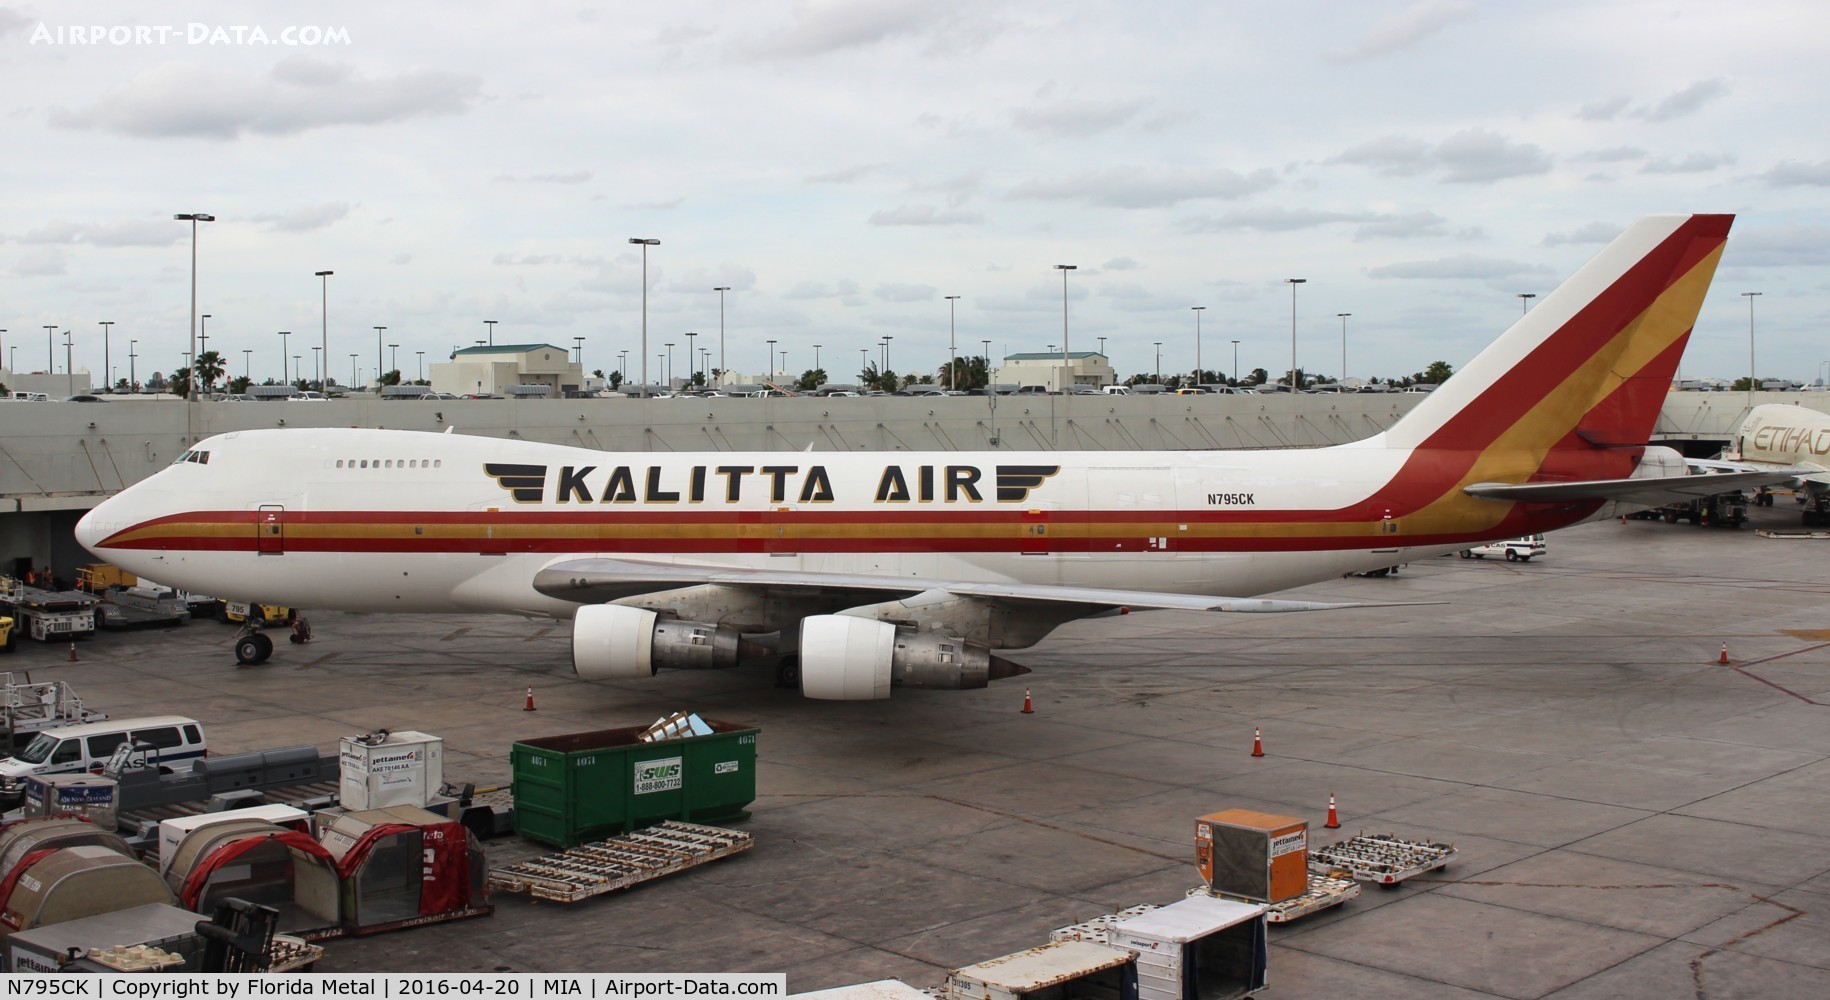 N795CK, 1984 Boeing 747-251B C/N 23111, Kalitta 747-200